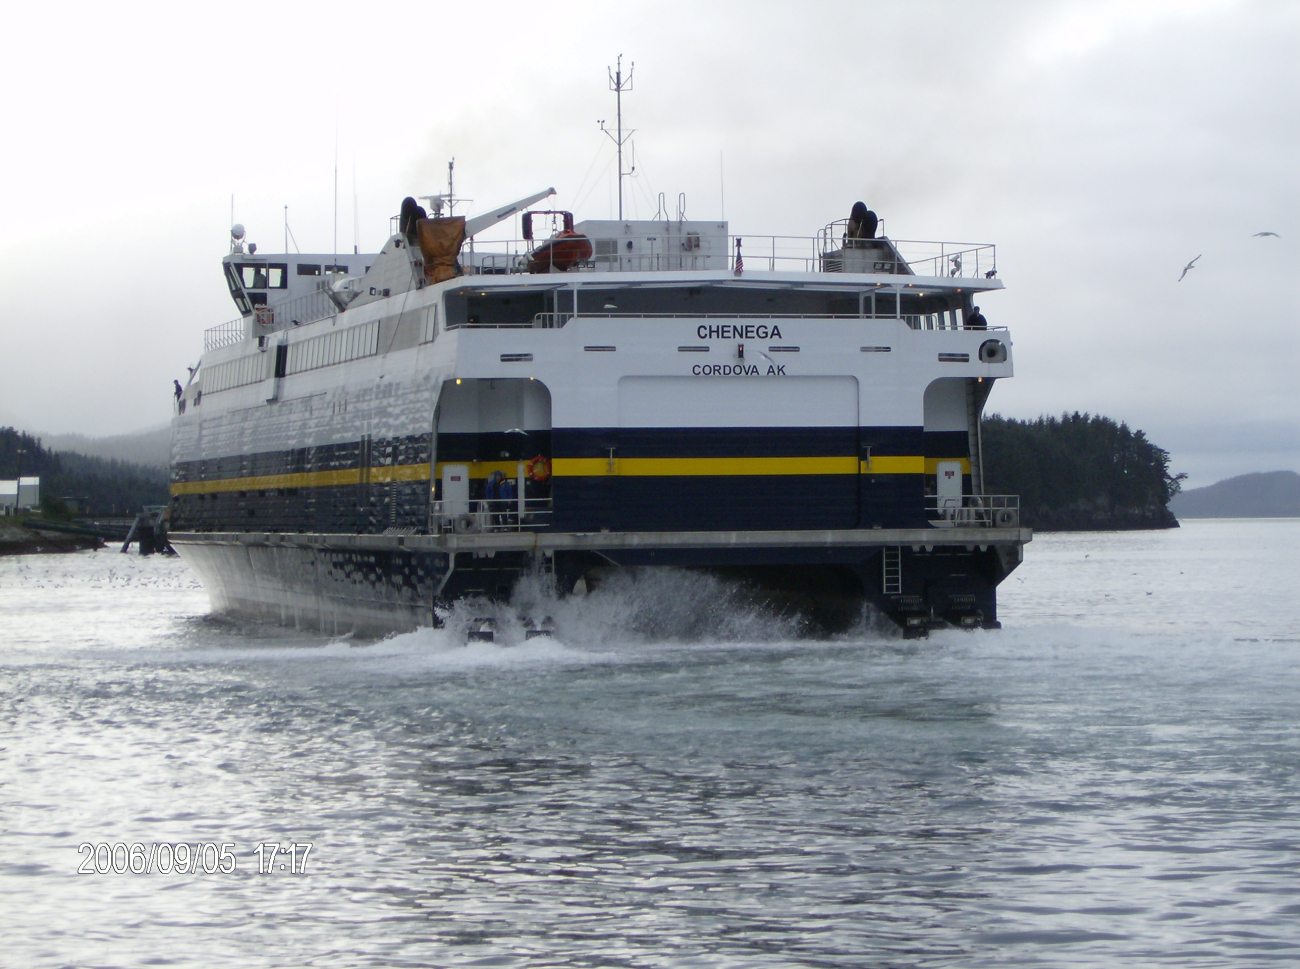 Alaska ferry CHENEGA at Cordova